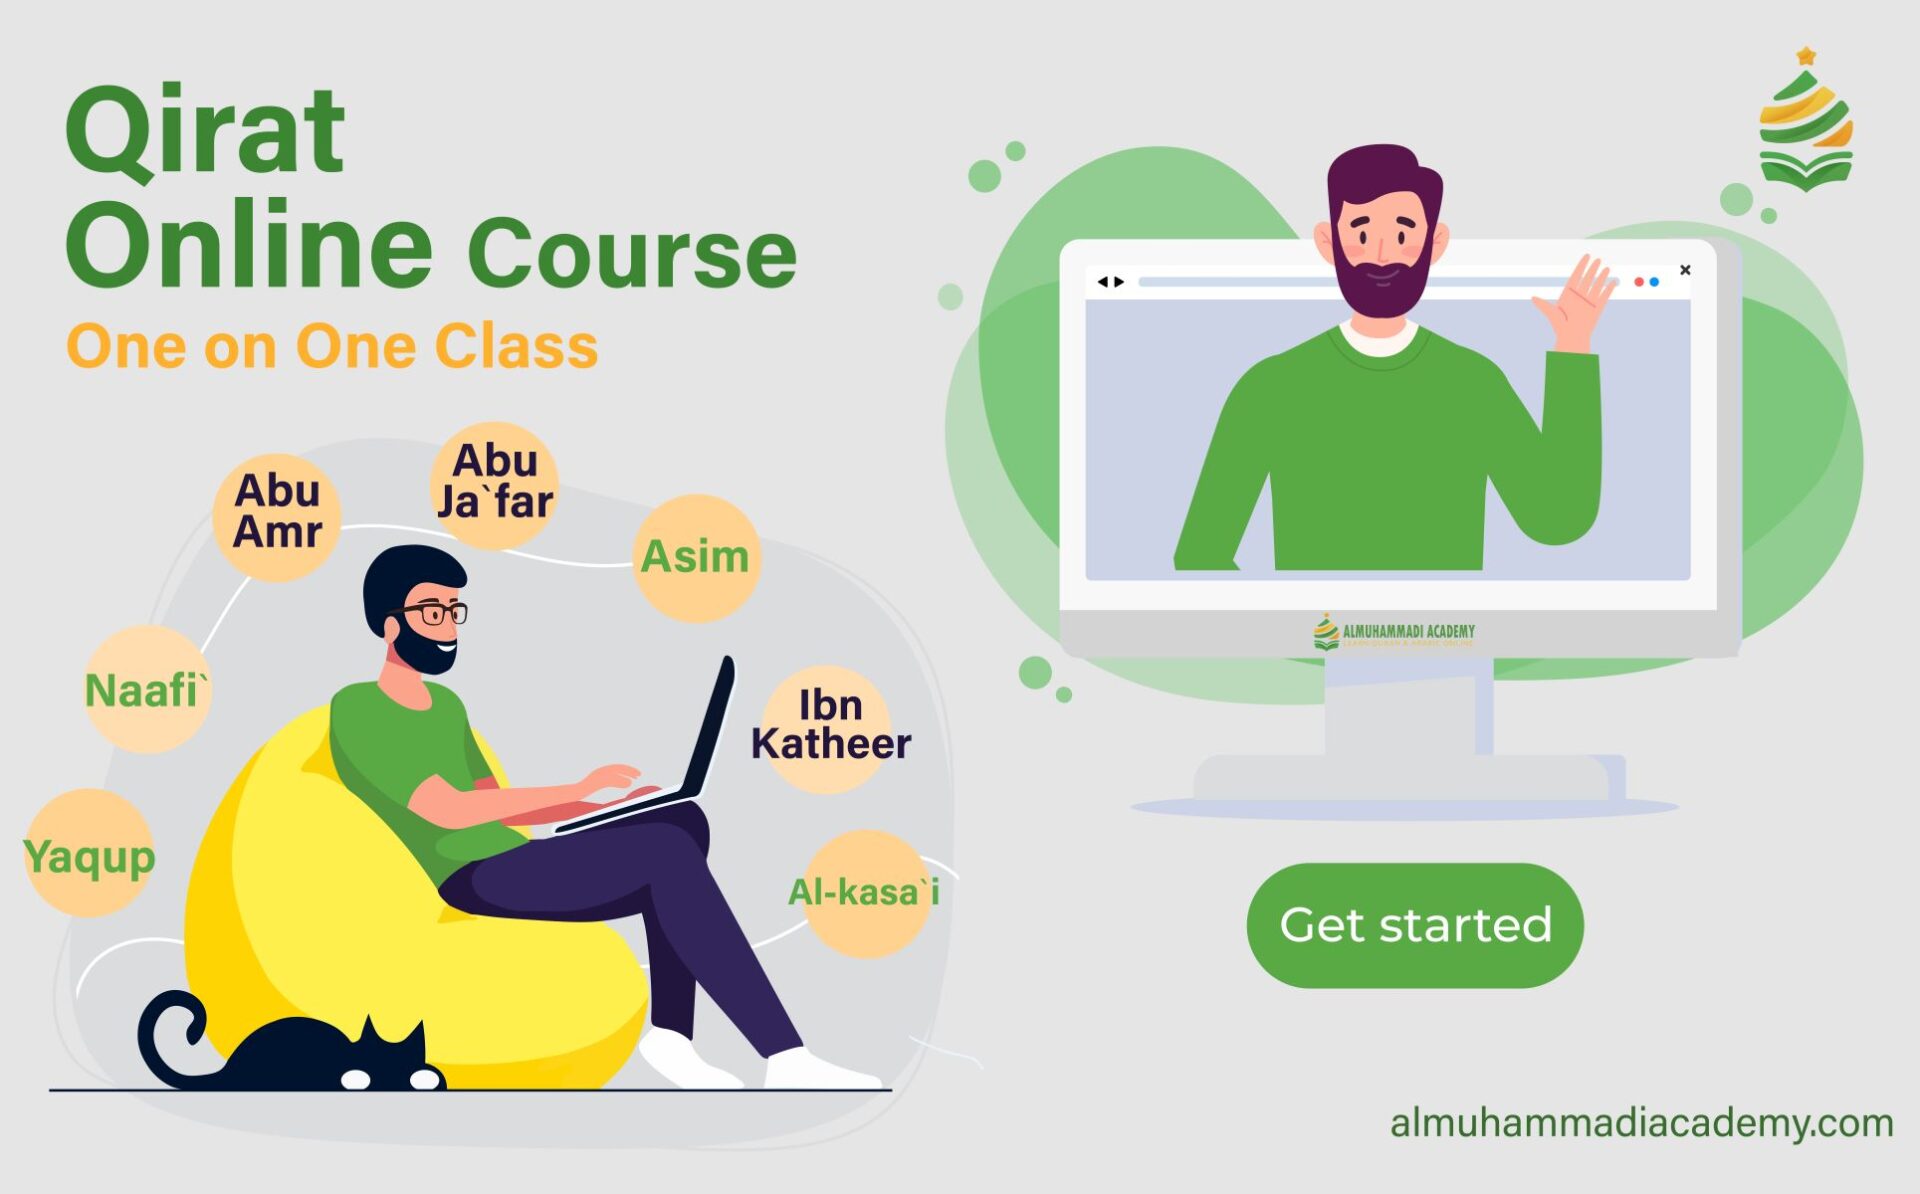 Online Qirat course